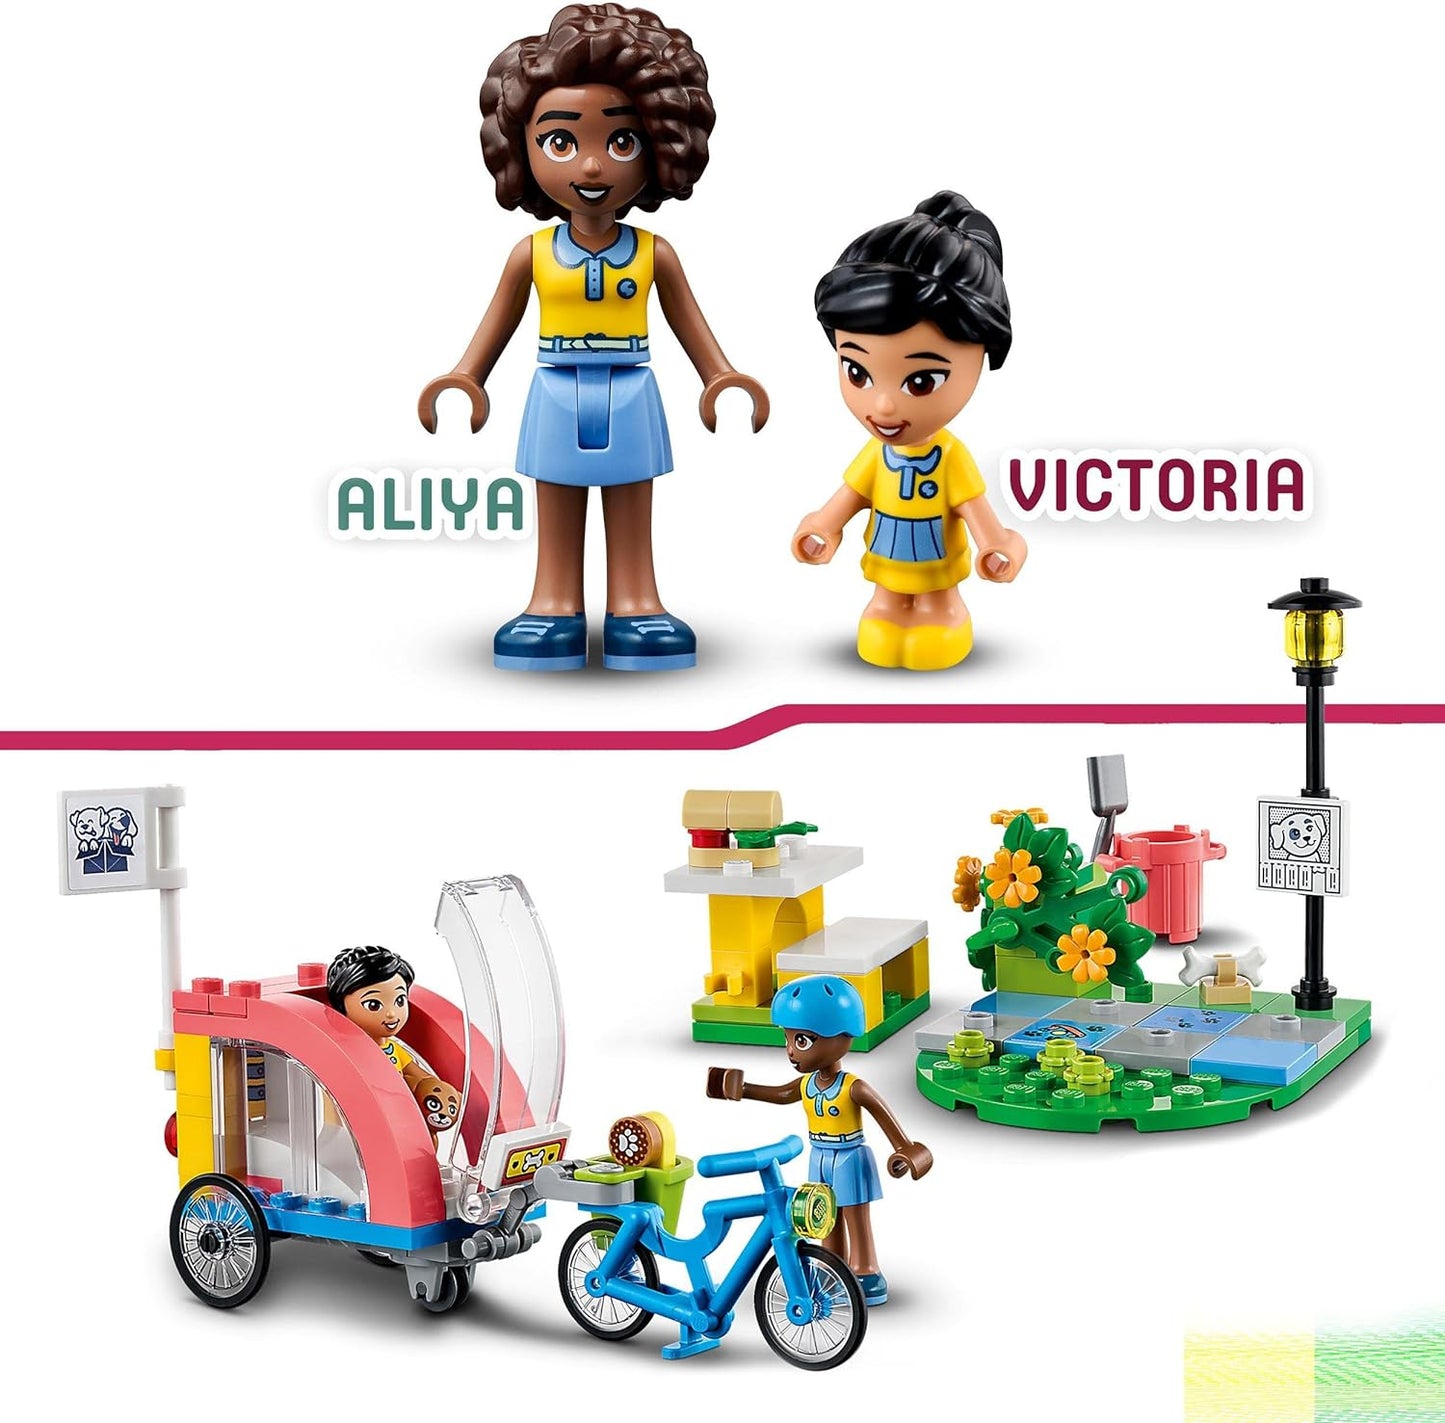 LEGO 41738 Conjunto de brinquedos para bicicleta de resgate de cães Friends, conjunto de animais para crianças, meninas e meninos de 6 anos ou mais com figura de cachorrinho e 2 minibonecos, personagens da série 2023